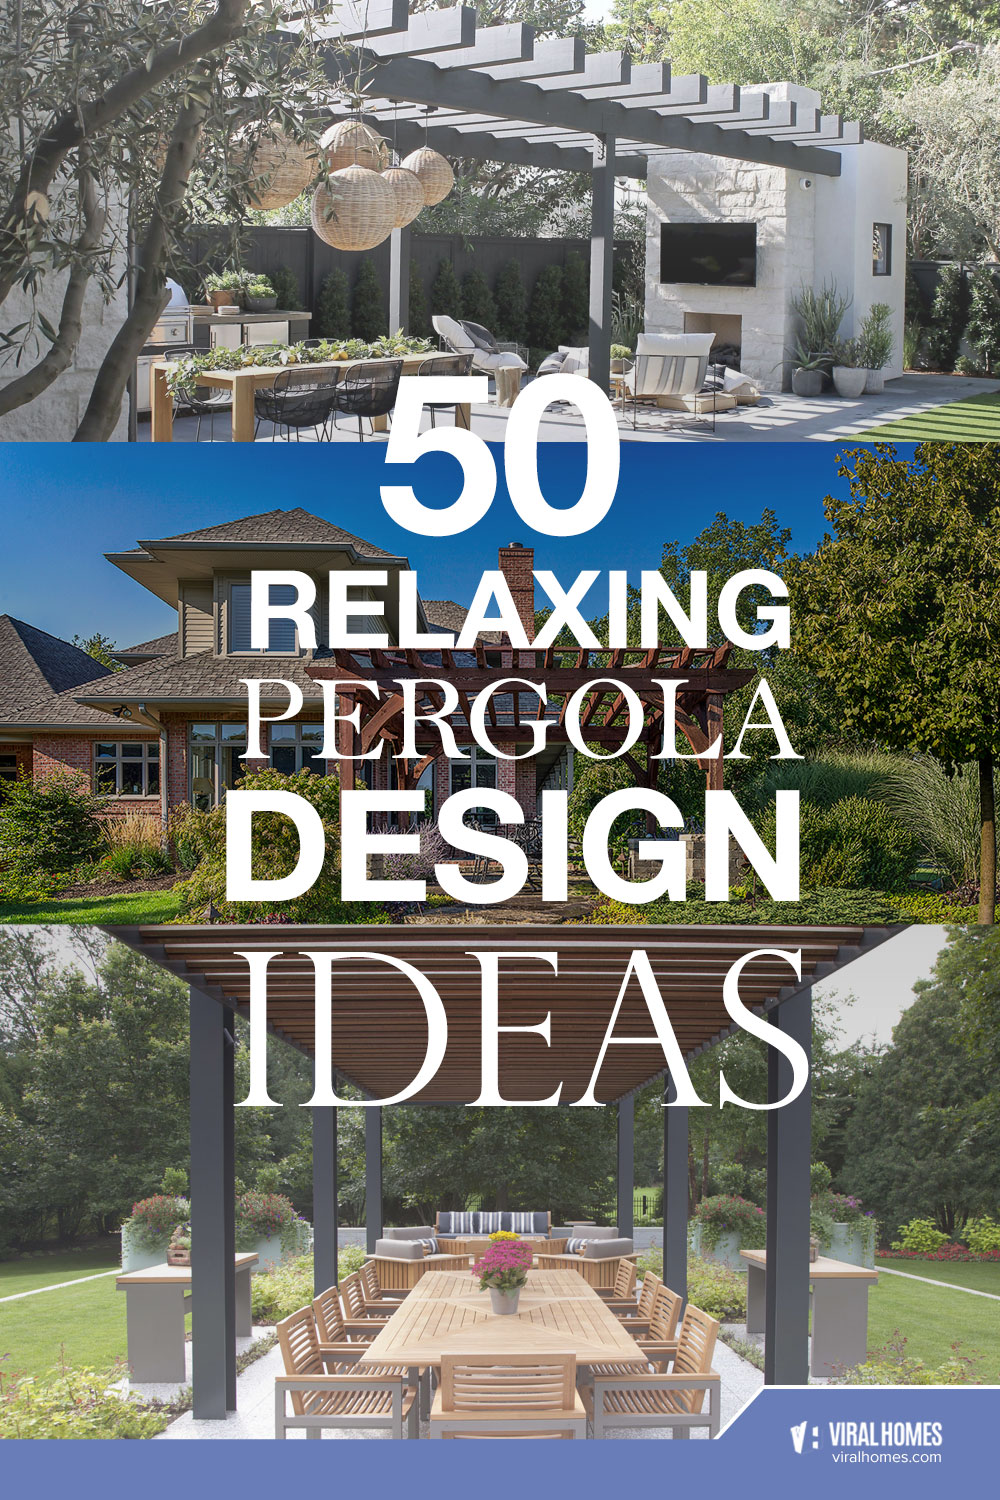 Relaxing Pergola Designs for Family Bondings